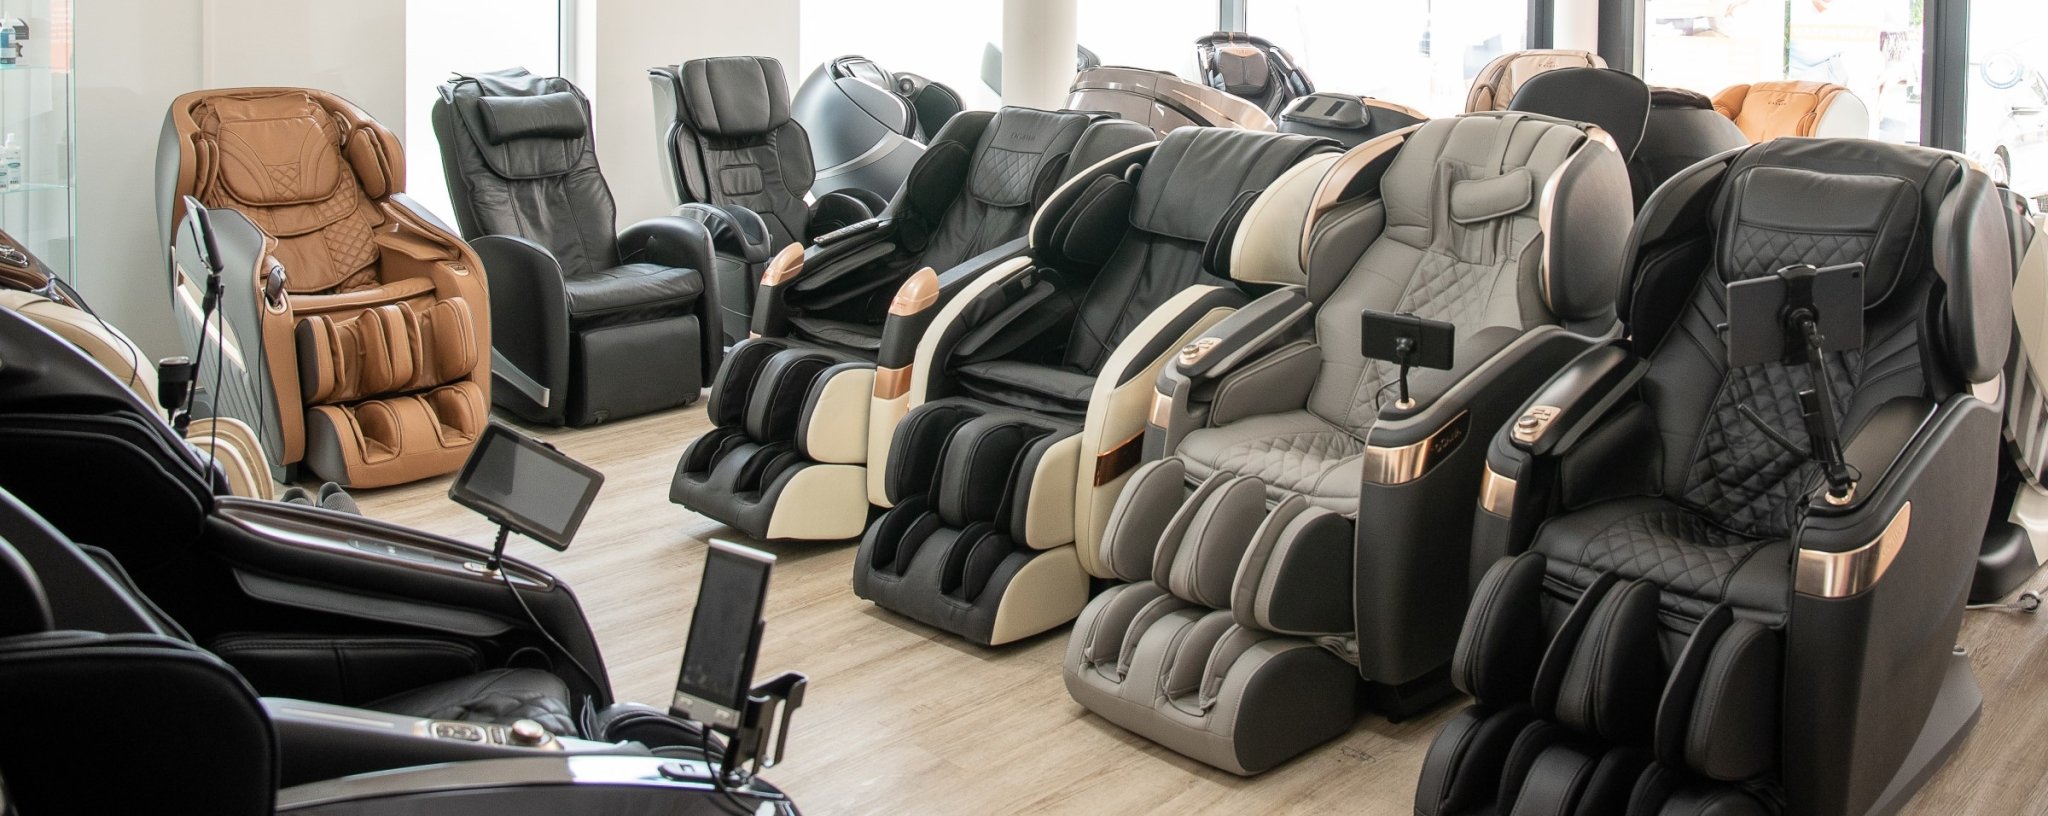 La mayor exposición de sillones de masaje de Alemania y Europa